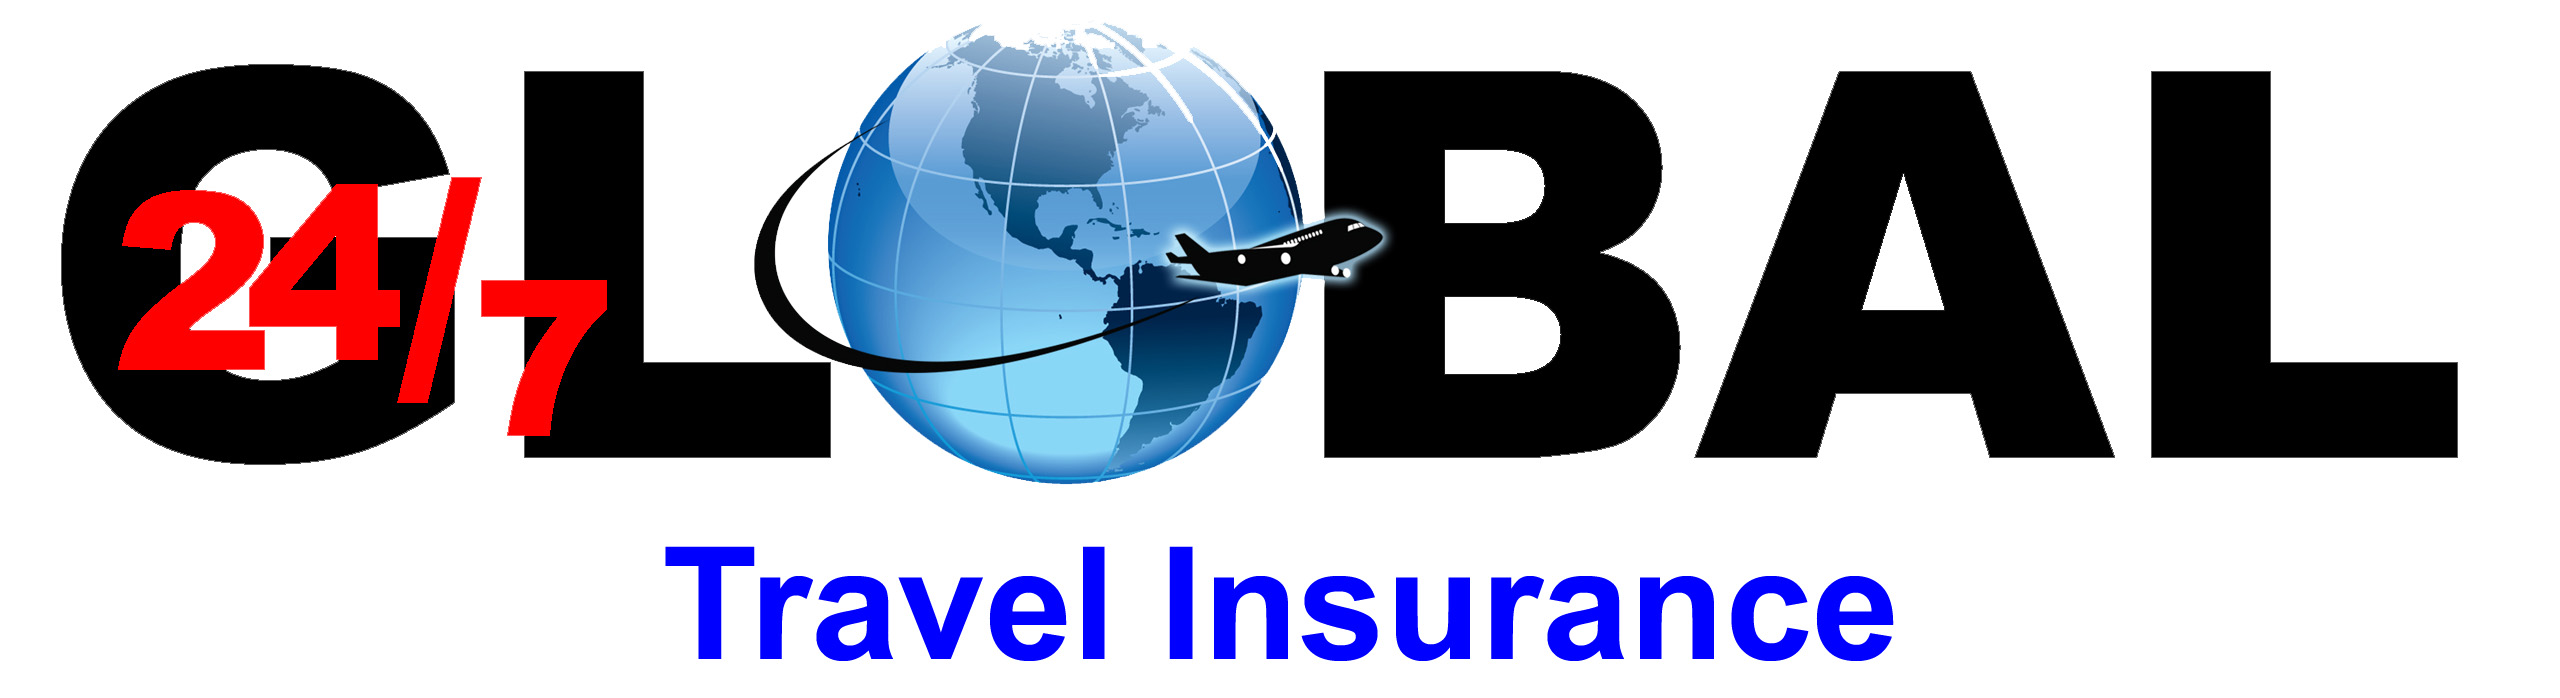 Global Travel Insurance